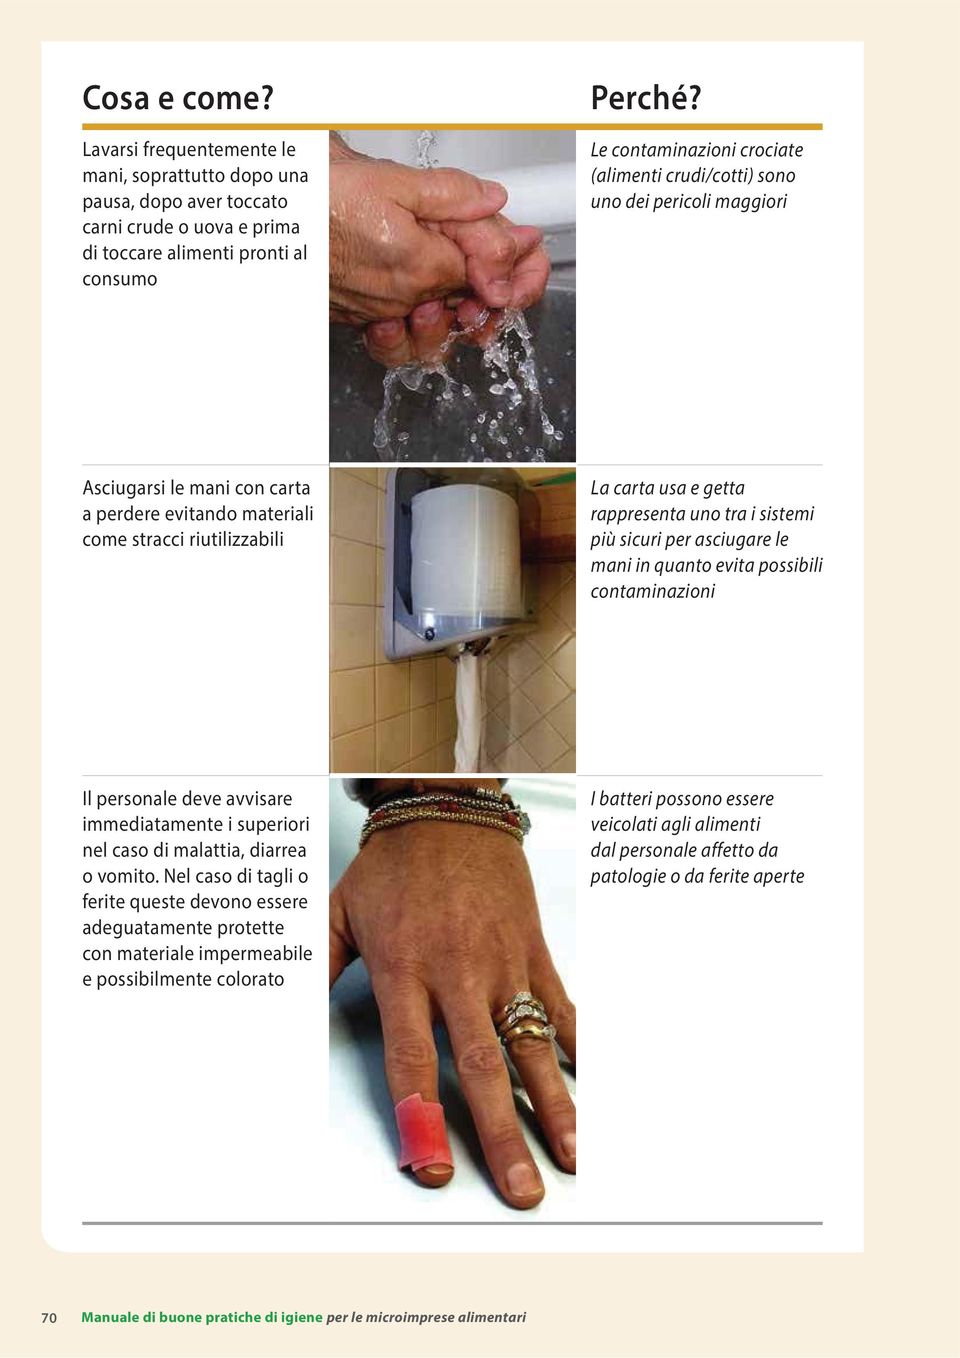 uno dei pericoli maggiori Asciugarsi le mani con carta a perdere evitando materiali come stracci riutilizzabili La carta usa e getta rappresenta uno tra i sistemi più sicuri per asciugare le mani in